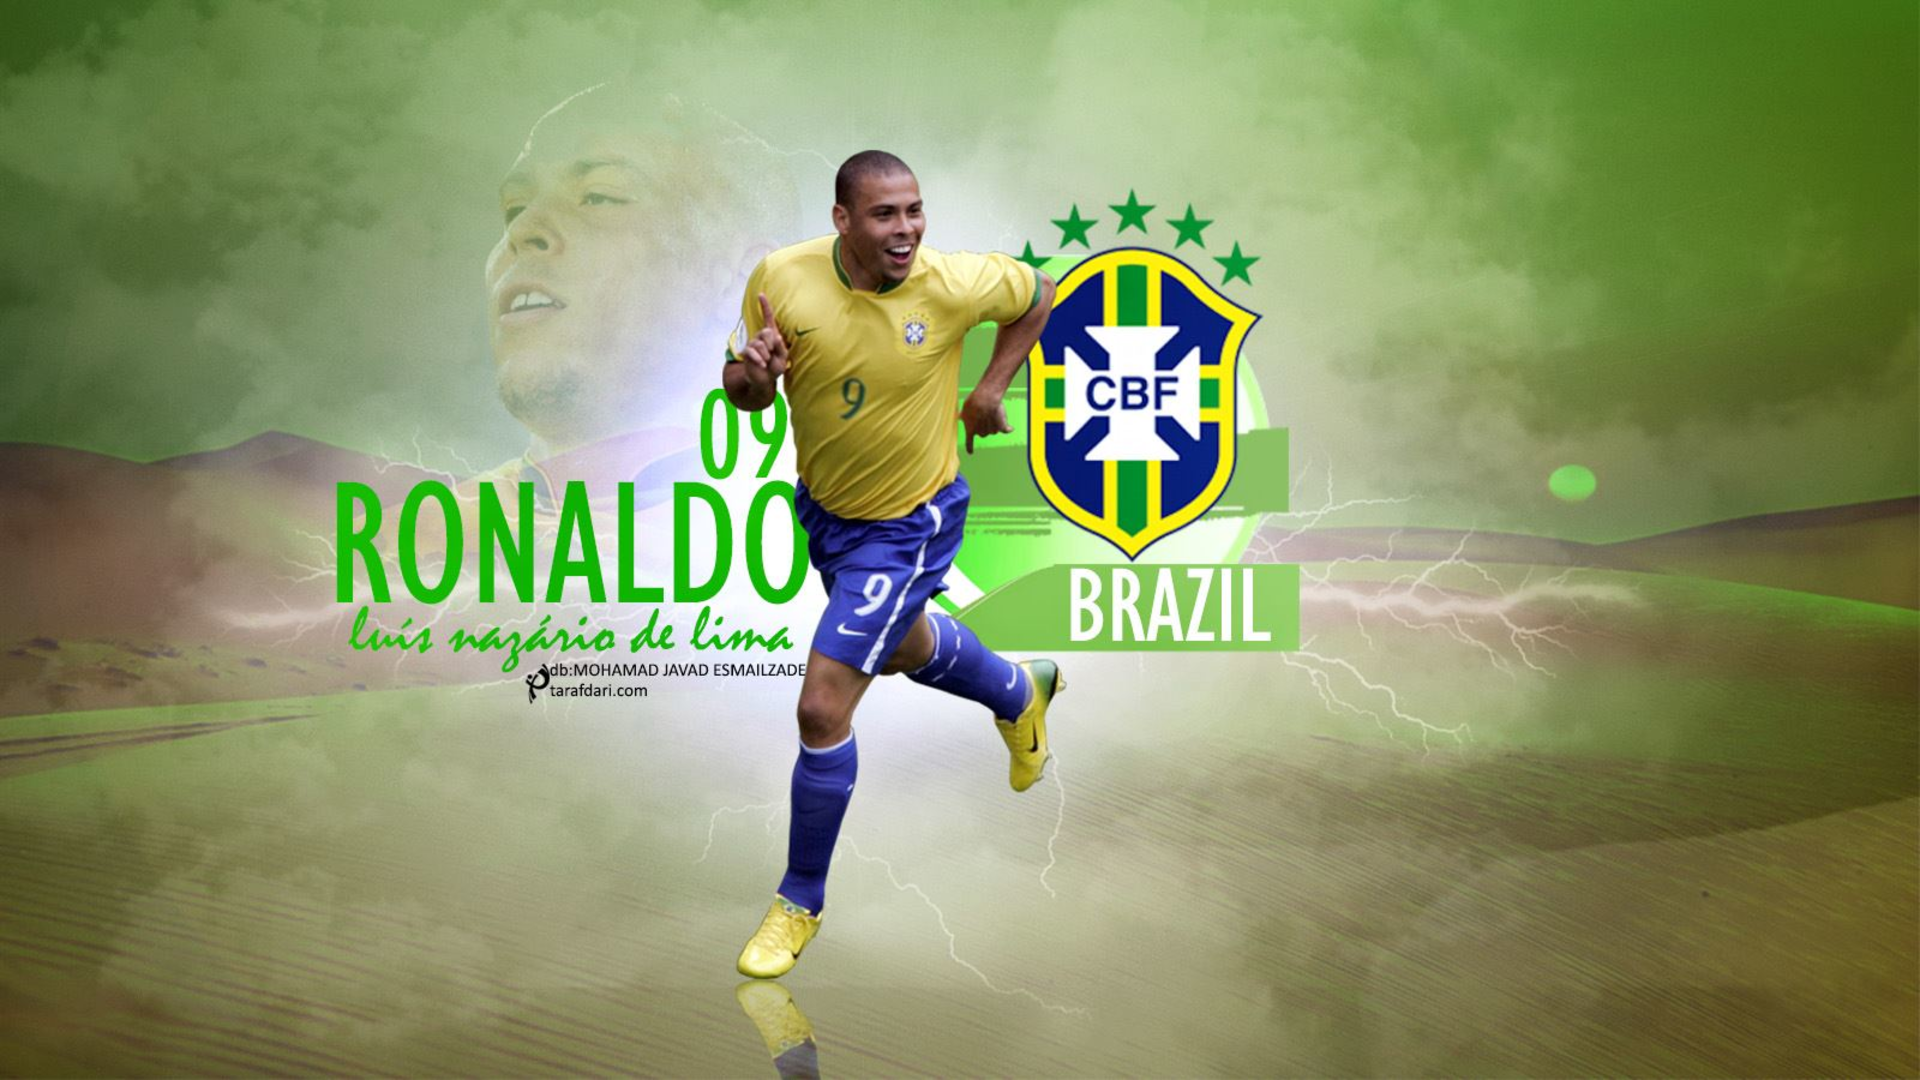 Ronaldo Nazário: Hãy cùng tìm hiểu thêm về hành trình sự nghiệp của ngôi sao bóng đá huyền thoại Brazil - Ronaldo Nazário. Với thân hình khỏe mạnh và khả năng chơi bóng điêu luyện, Ronaldo đã từng là niềm tự hào của không chỉ đội tuyển quốc gia mà cả rất nhiều CLB nổi tiếng trên thế giới.